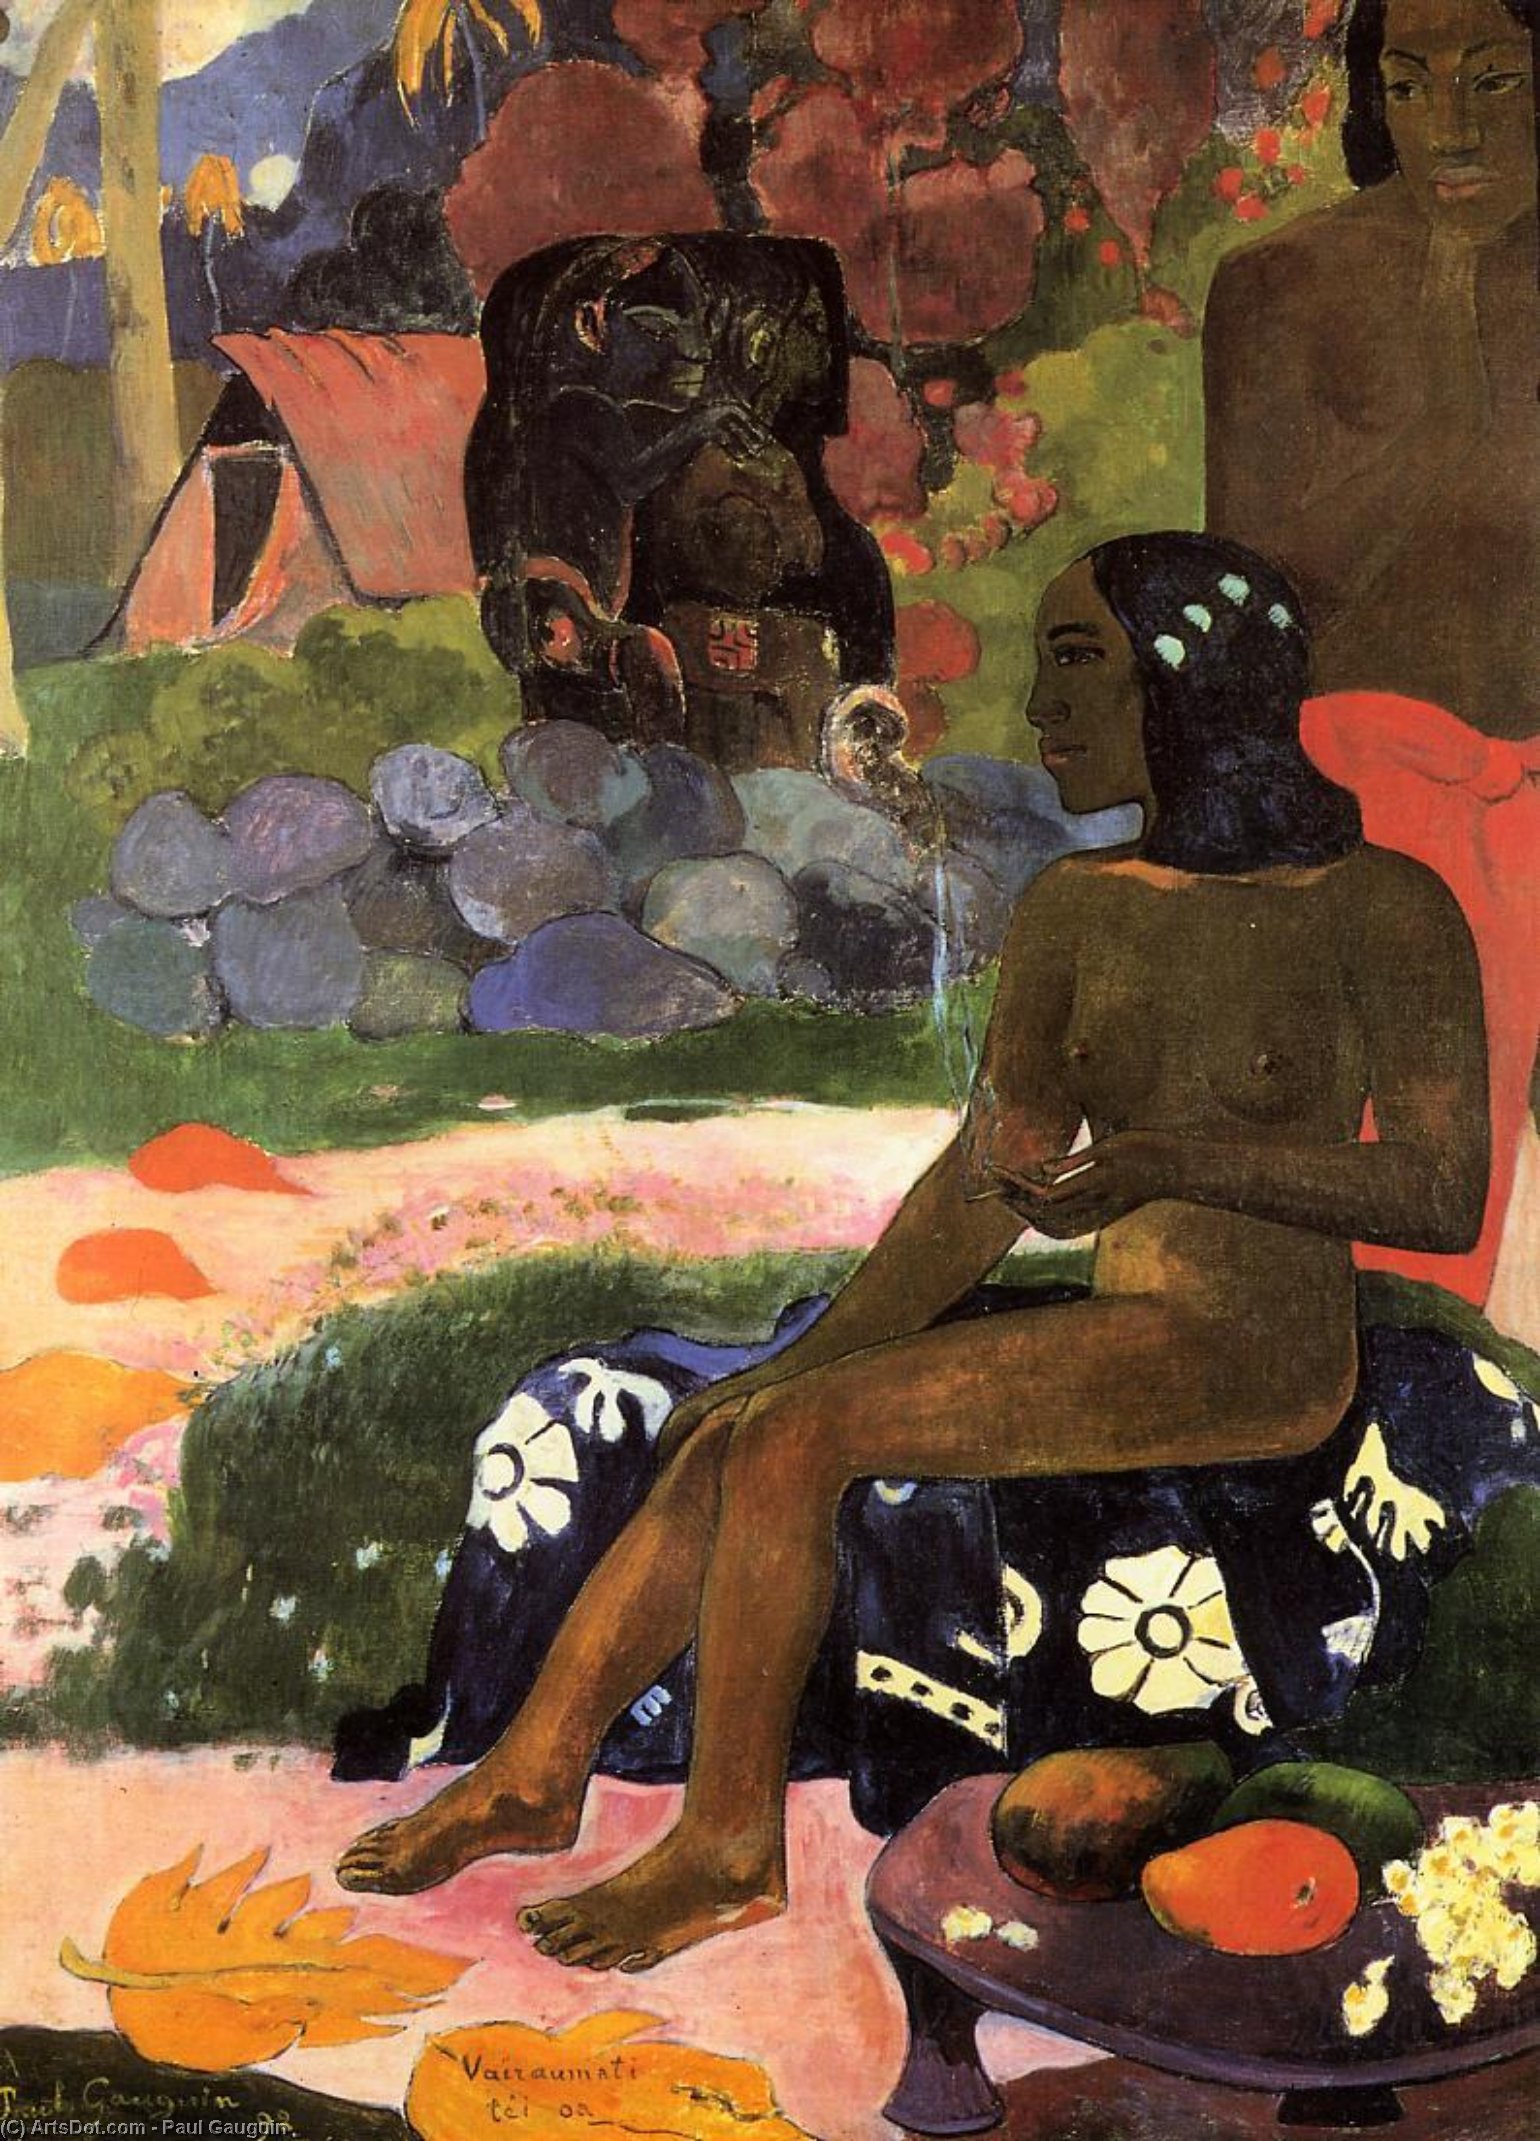 Wikioo.org - Die Enzyklopädie bildender Kunst - Malerei, Kunstwerk von Paul Gauguin - viaraumati tei oa ( auch bekannt als ihr name ist Viaraumati )